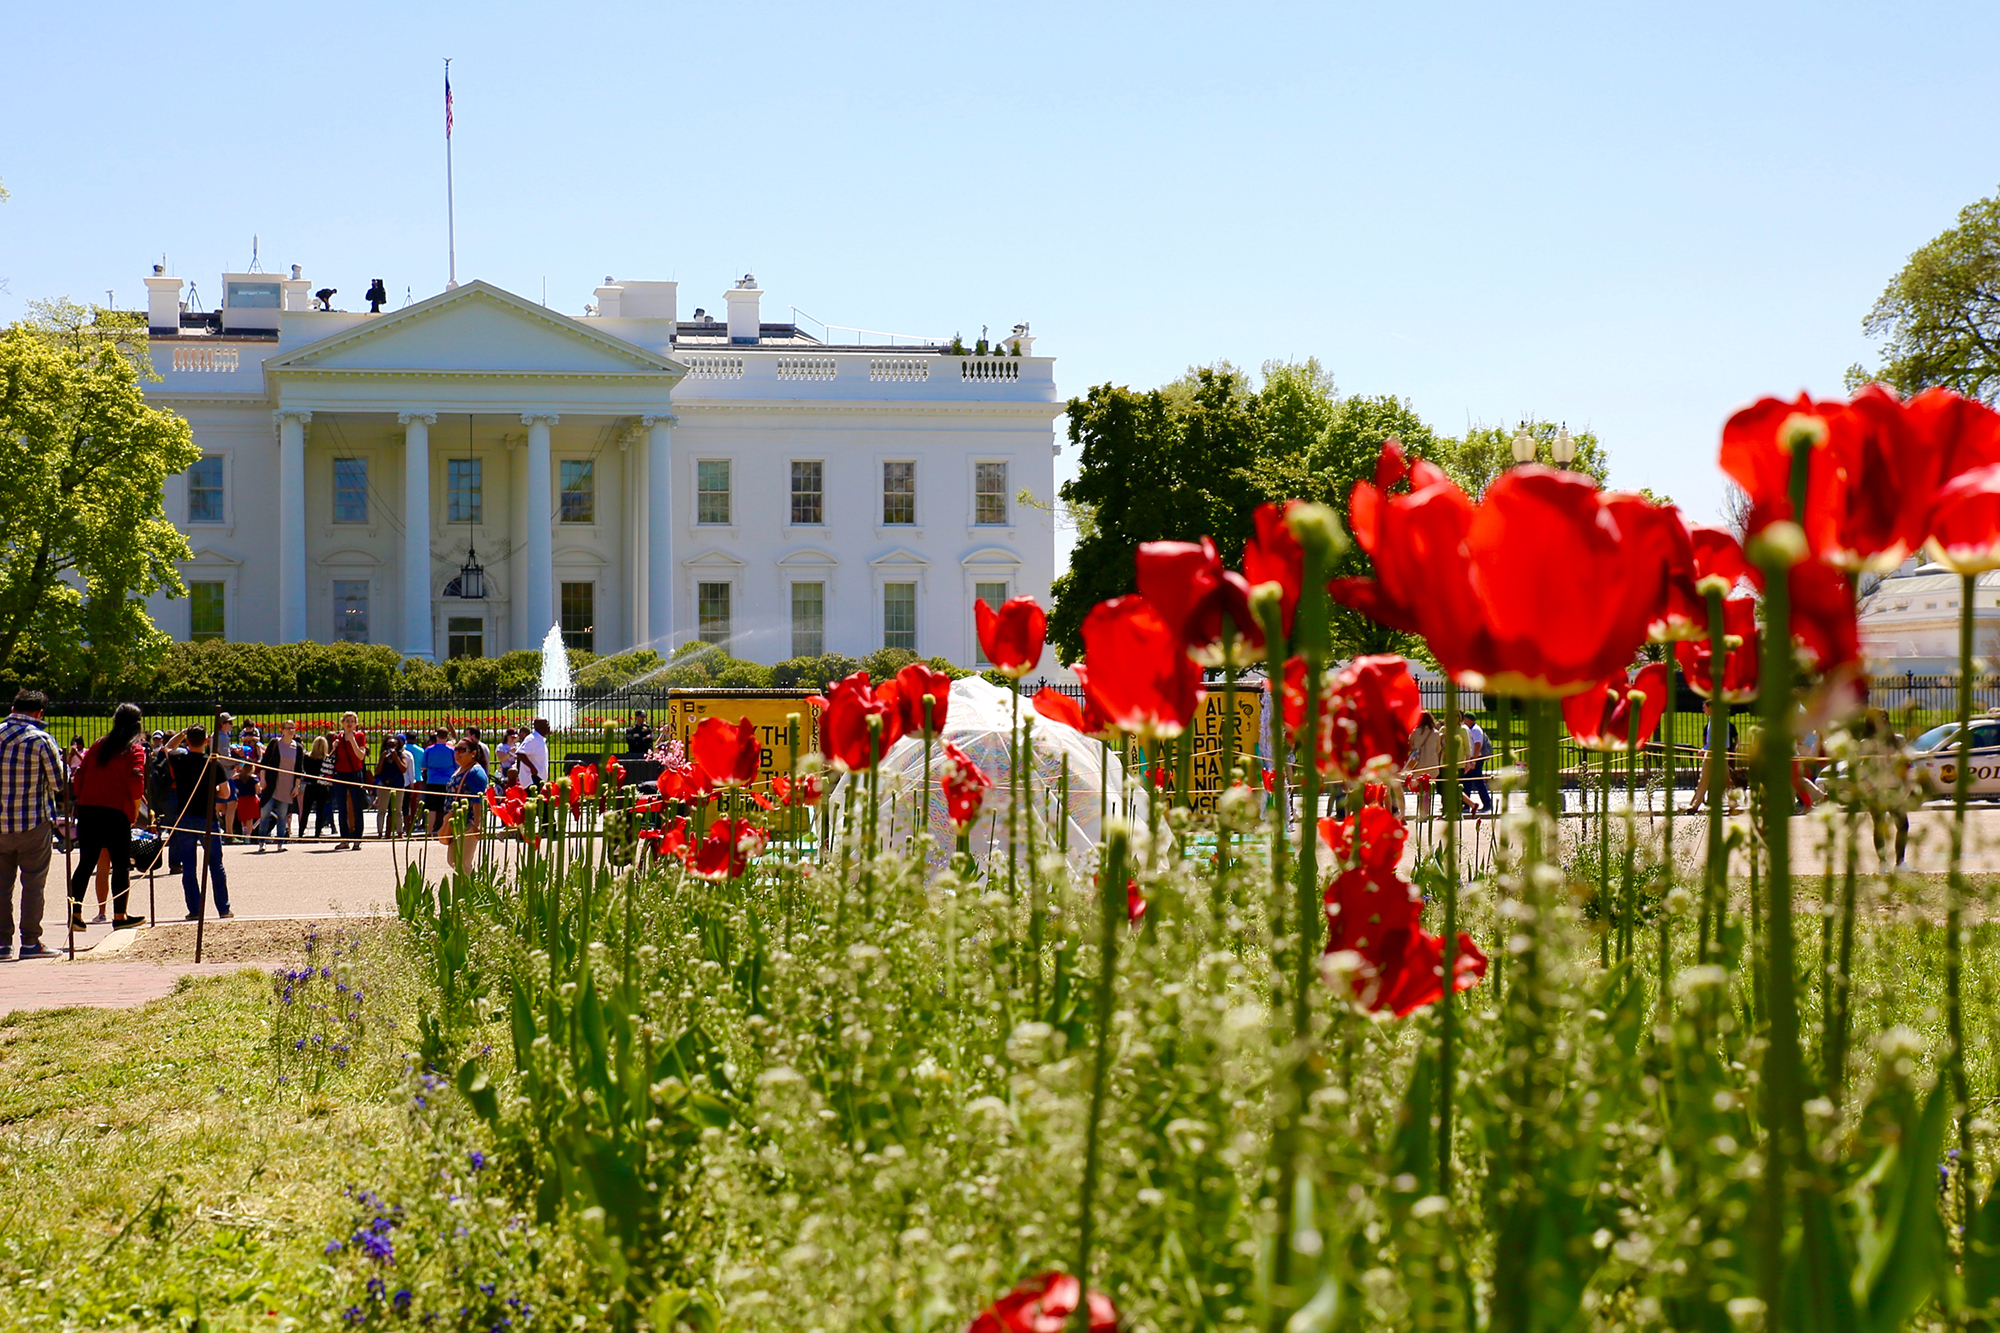 Weißes Haus mit Tulpen davor